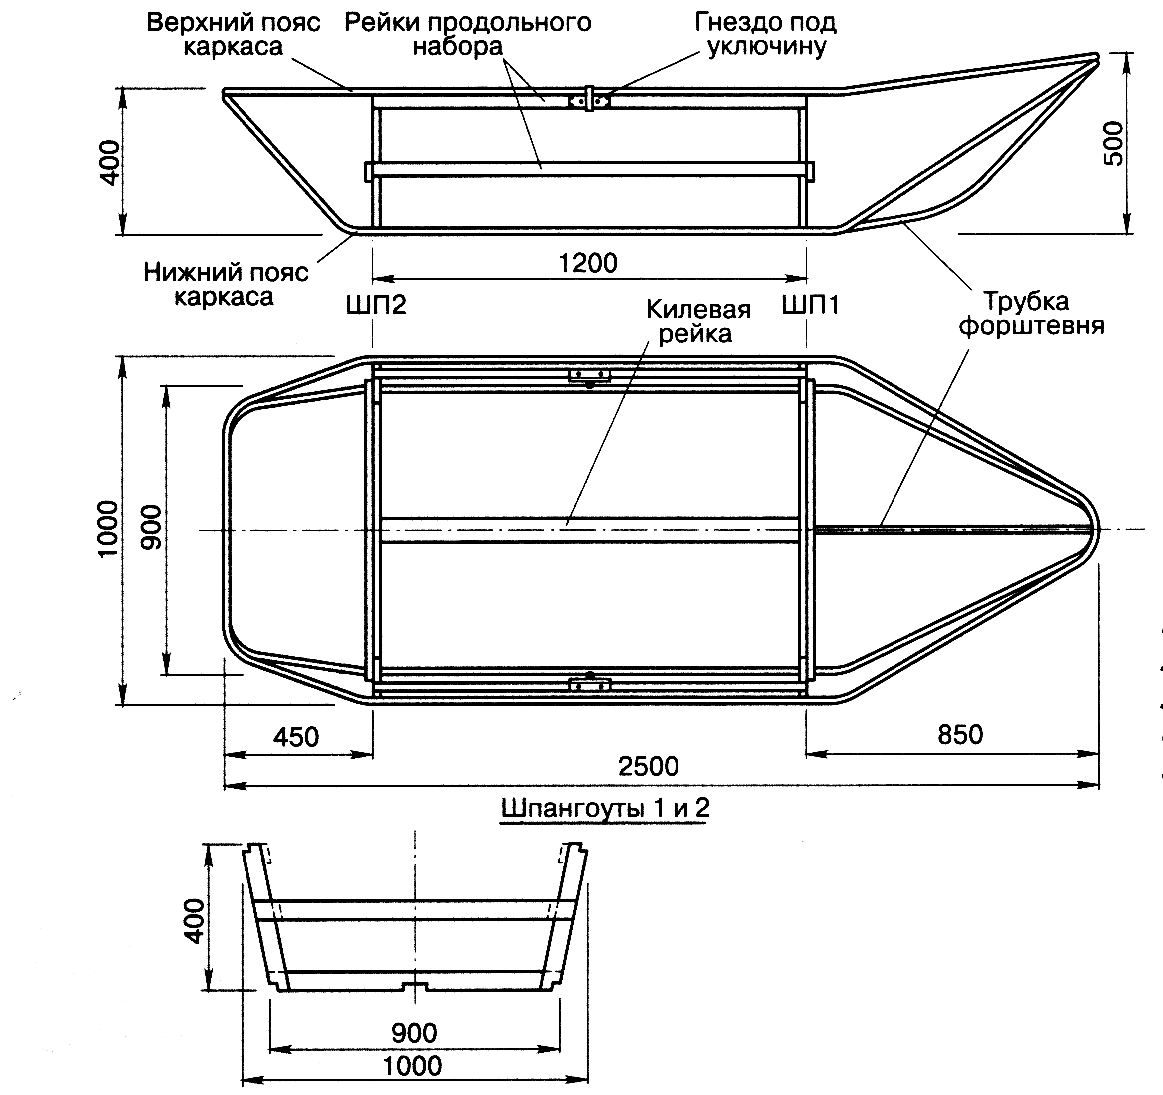 Лодка из пластика самодельная: Самодельная лодка из ПВХ труб | Дачный механник